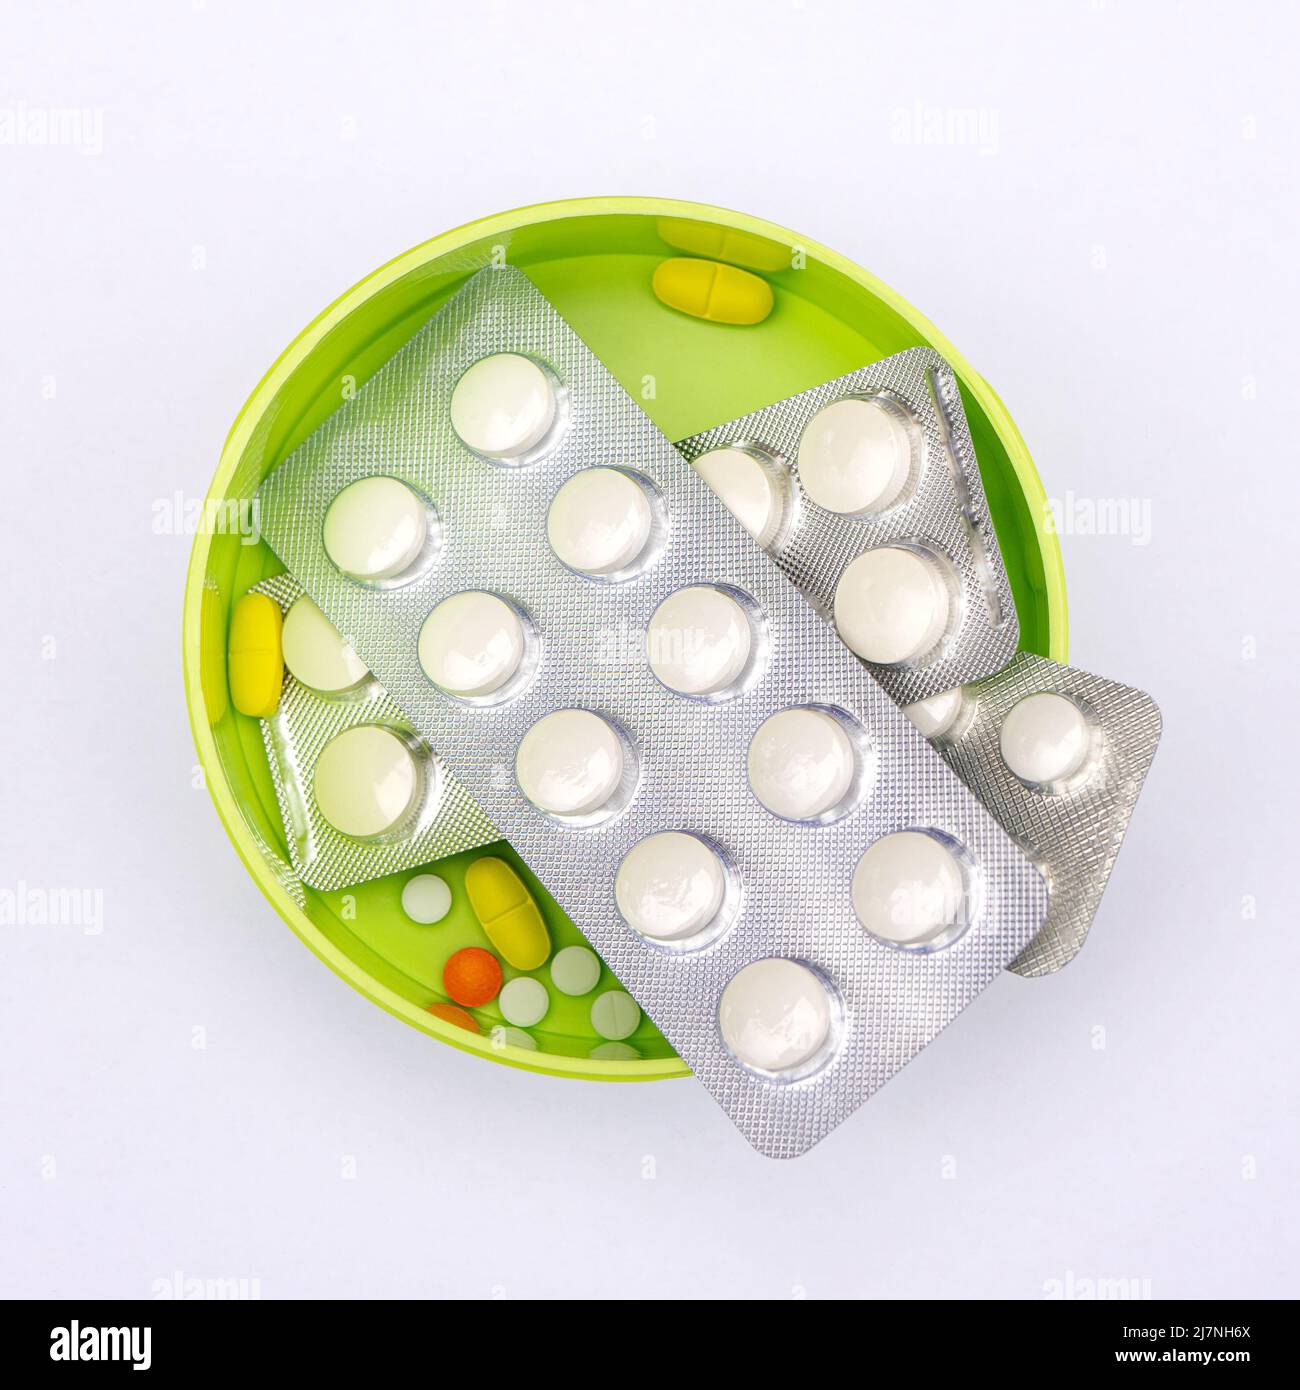 Multi-colored pills in a bright green box. Stock Photo